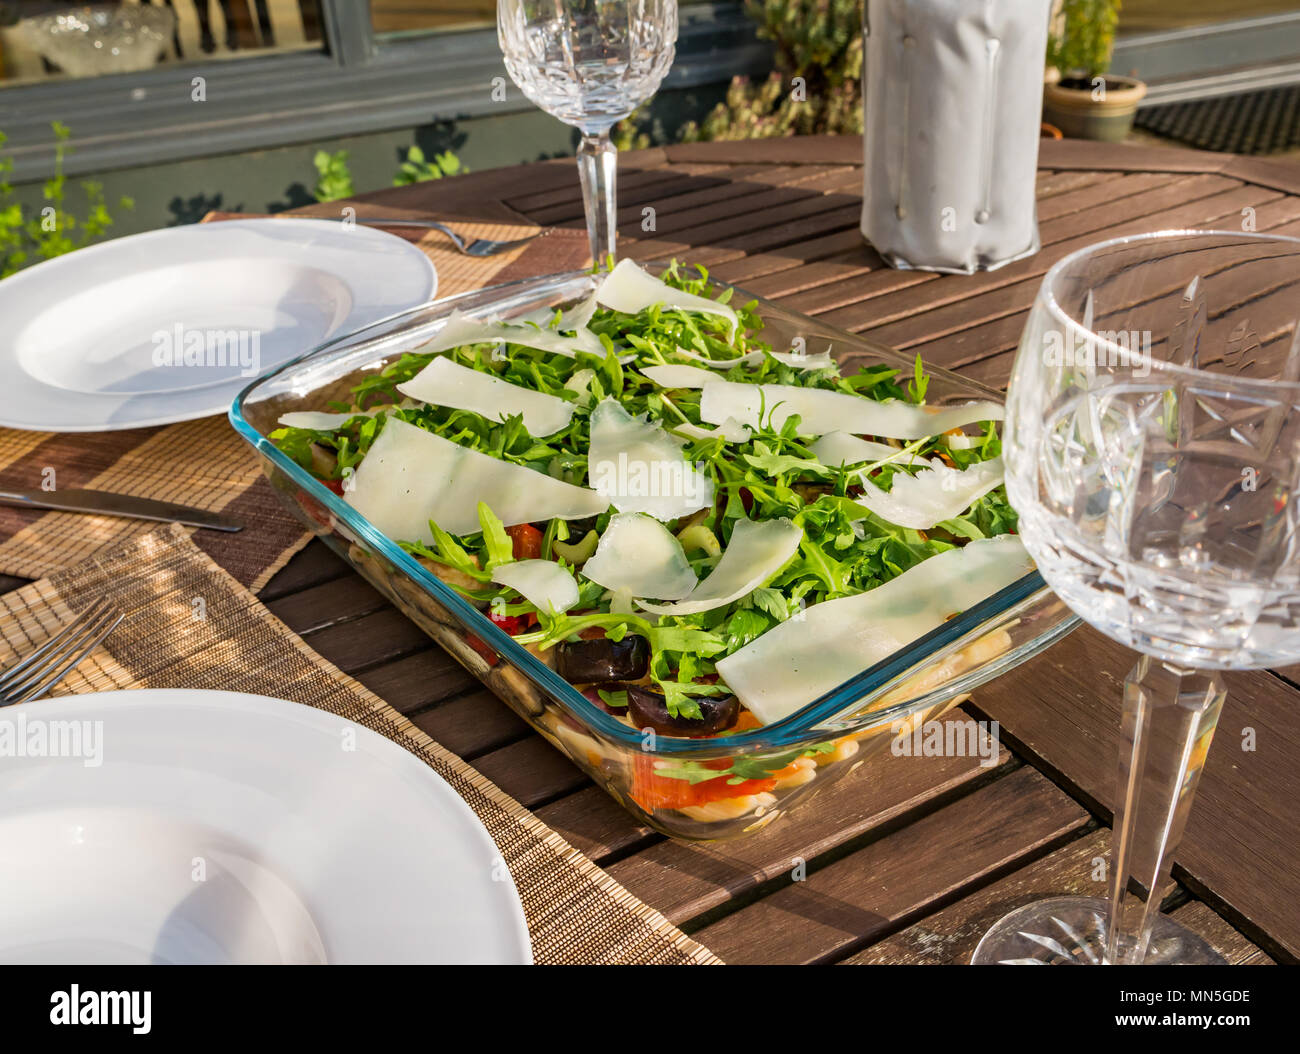 Tavolo esterno nella luce del sole con insalata di pasta piatto, cristallo bicchieri di vino e una bottiglia di vino bianco freddo nello scambiatore di calore Foto Stock